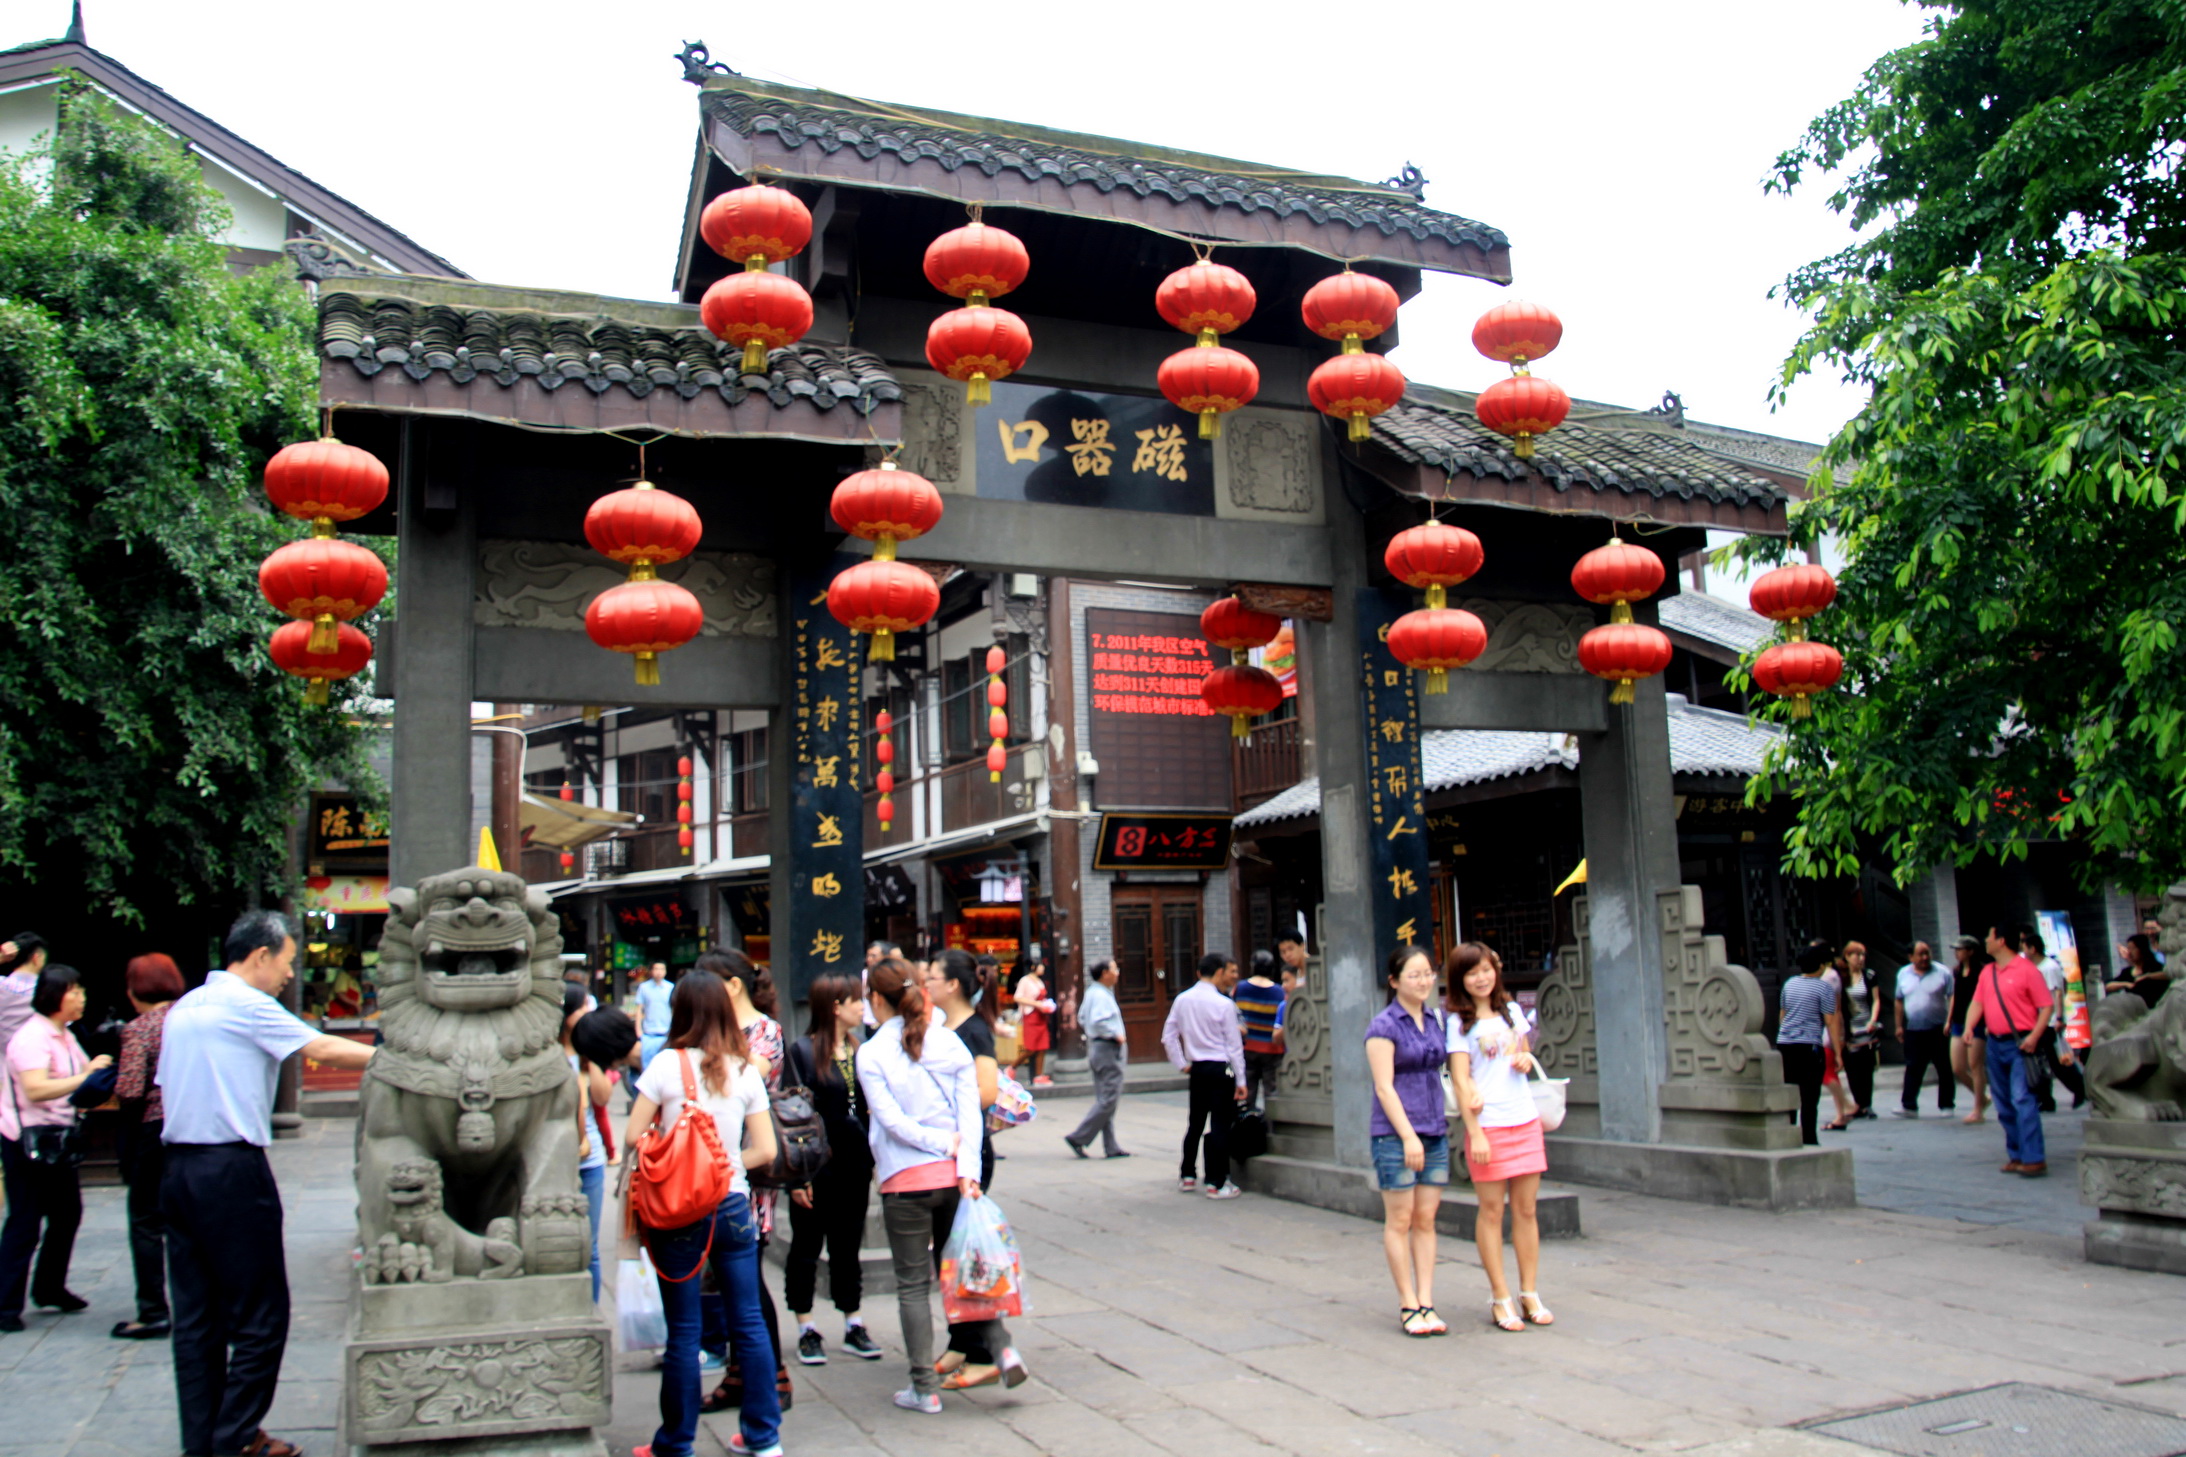 千年古镇磁器口，这里是老重庆该有的模样，吸引了众多游客来打卡 -6park.com